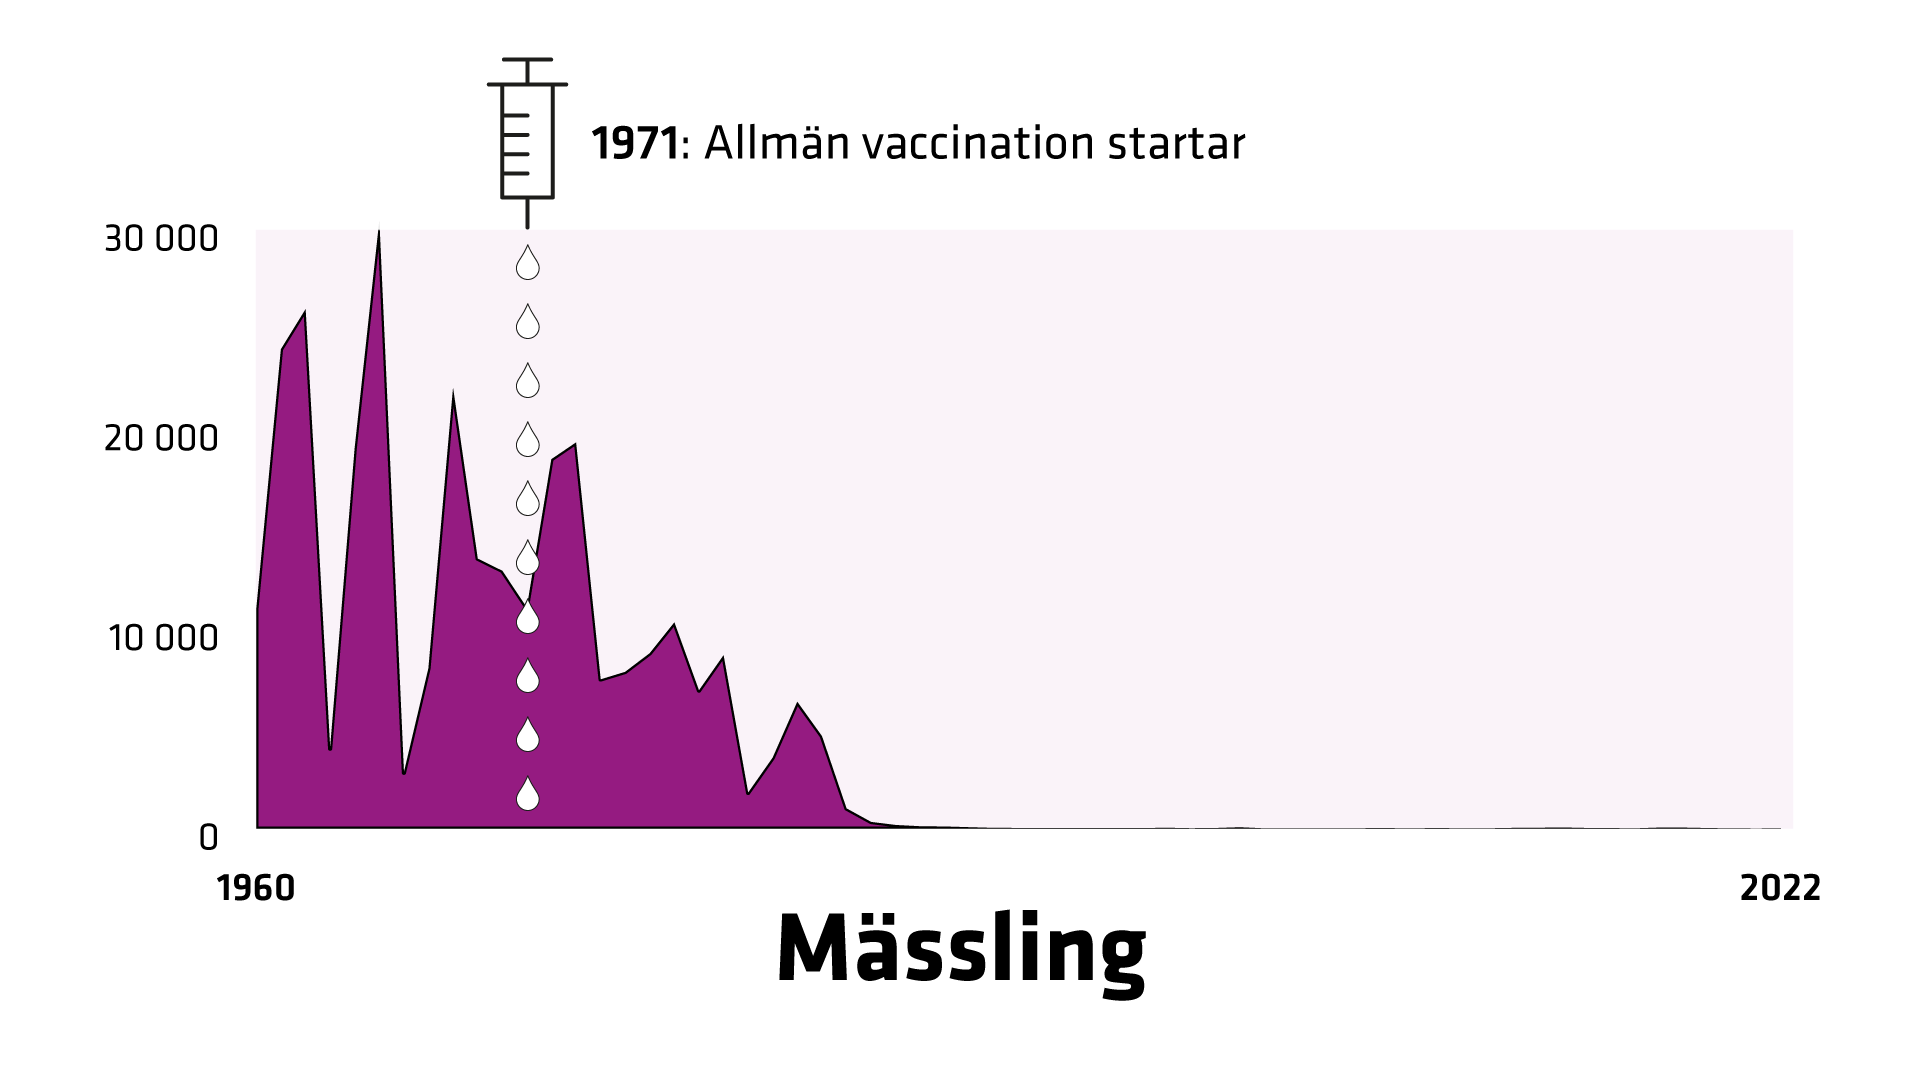 1960 registreras 11 000 fall av mässling. 1971 startar allmän vaccination. Då registreras 11 054 fall. Antalet fall sjunker till bara några få fall 2022.